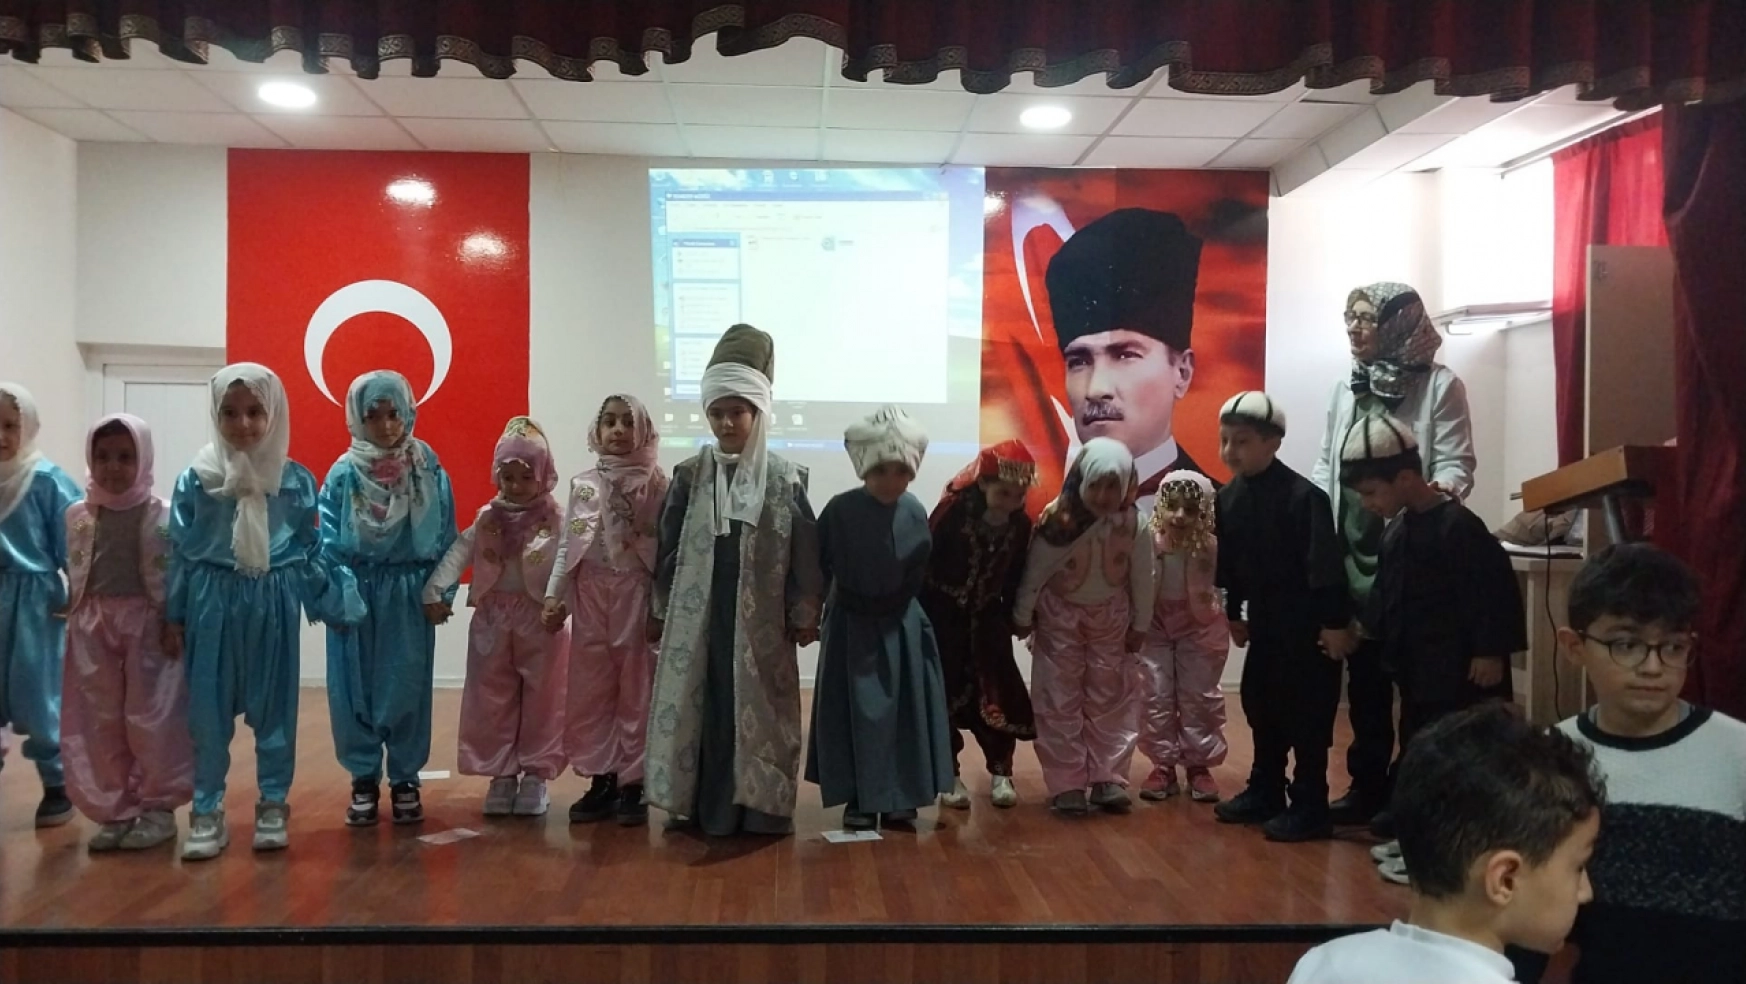 İsmet Paşa İlkokulu 1-B Sınıfı Mevlana'yı Anma Haftasında Yüreklere Dokundu